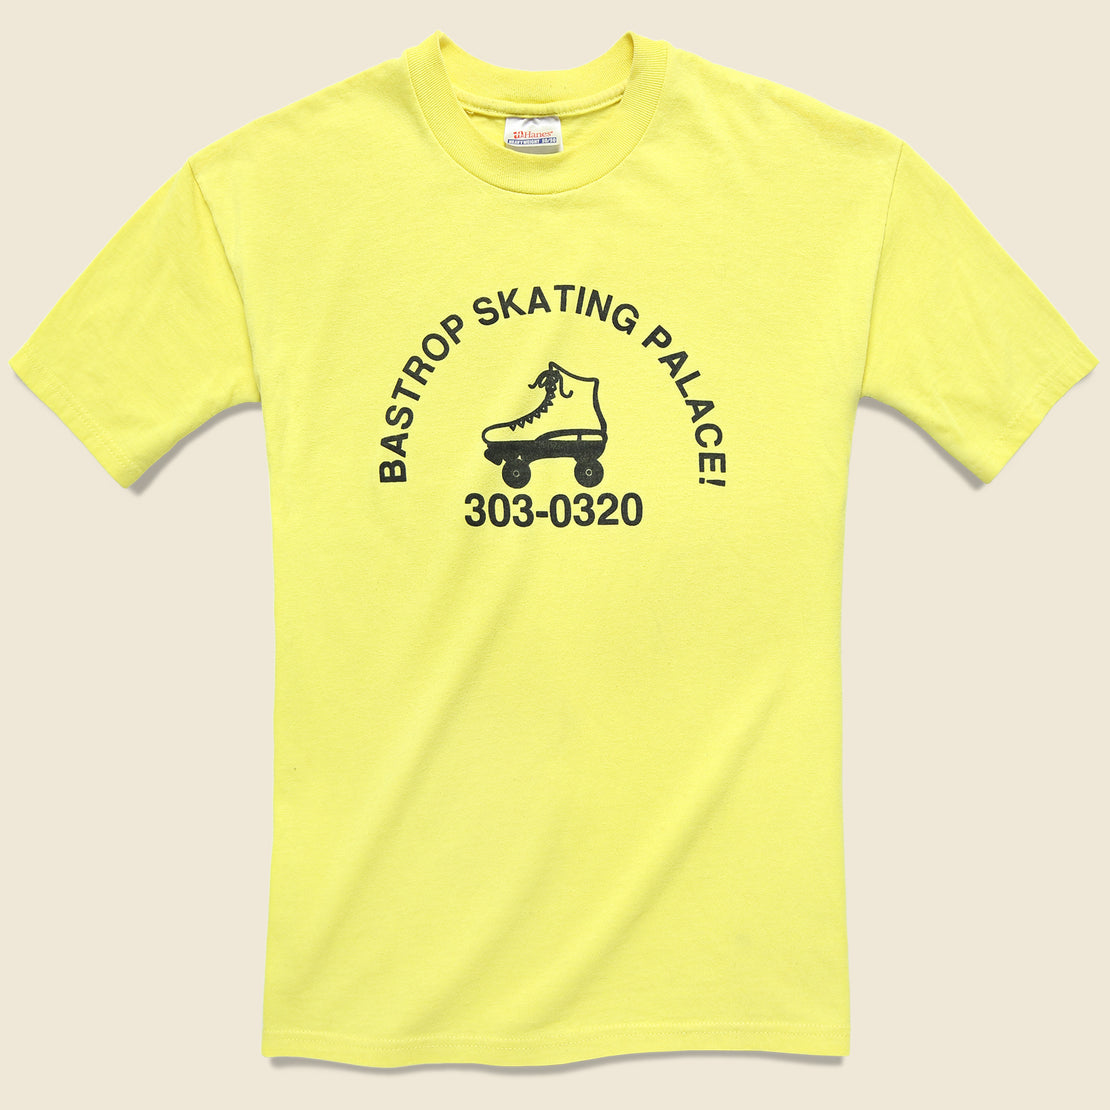 Vintage Bastrop Skating Palace T-Shirt - Yellow